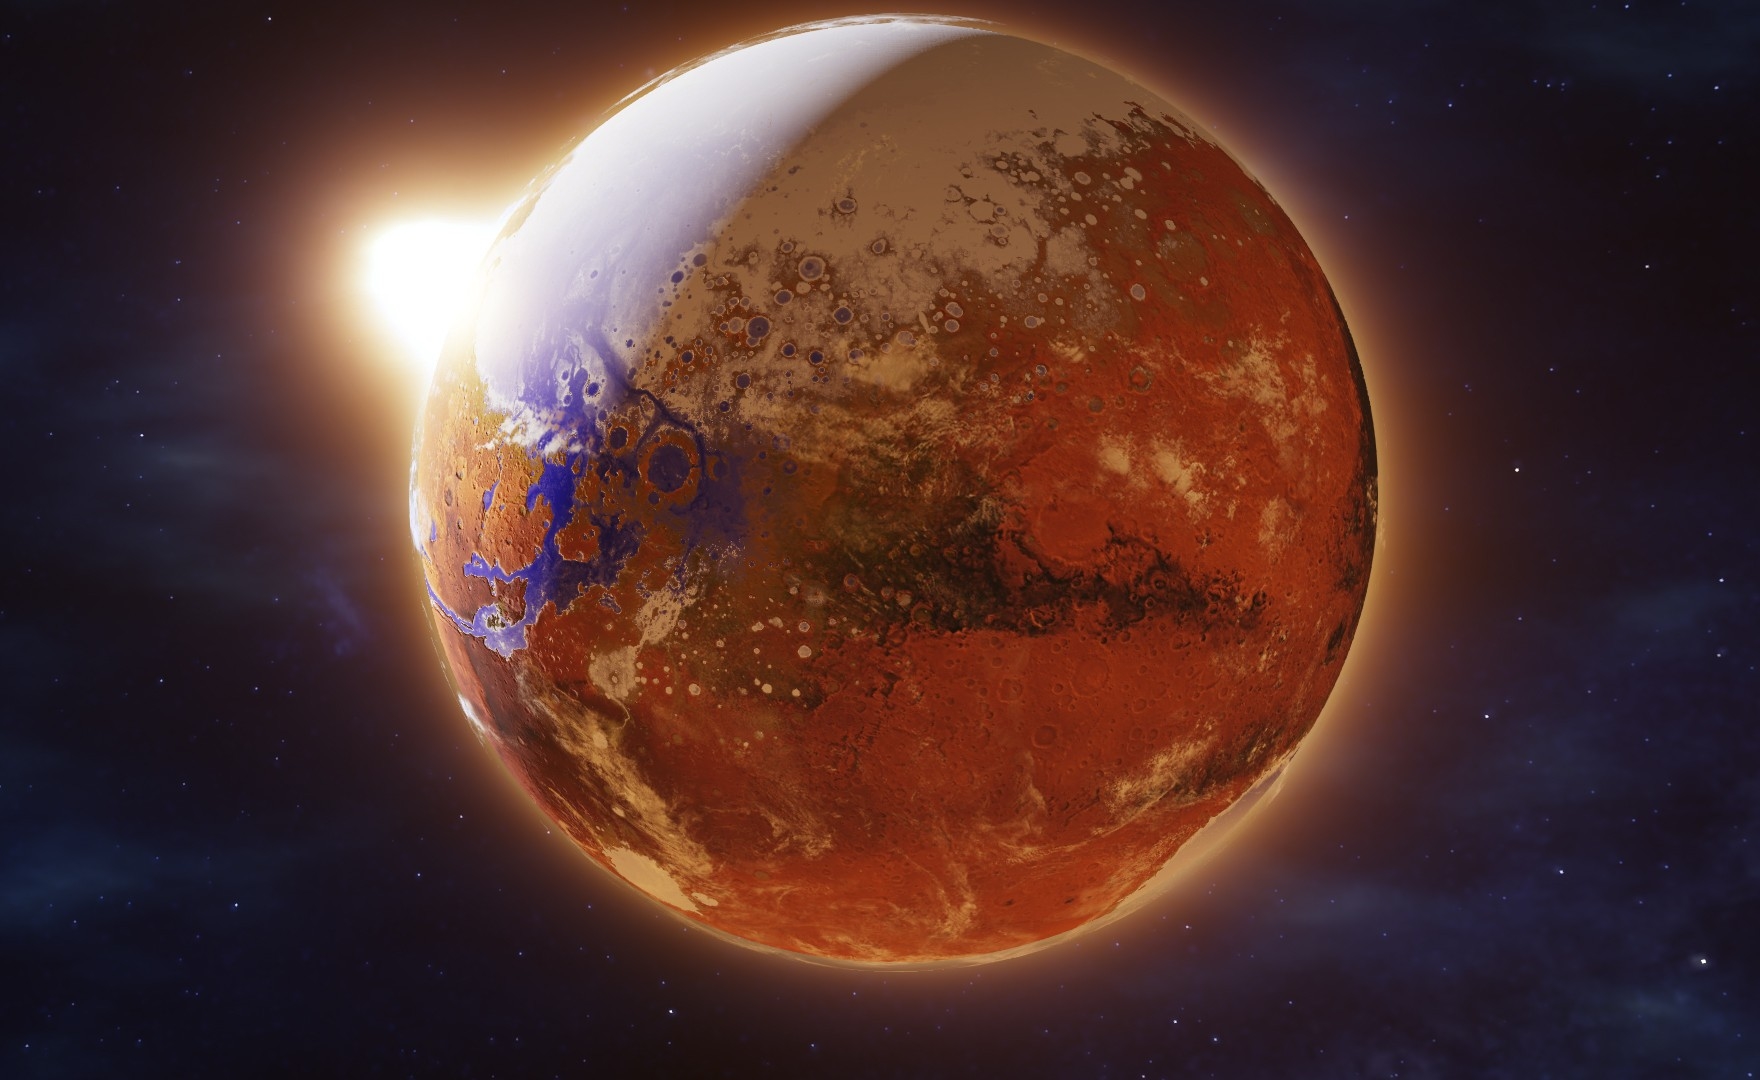 Surviving Mars gratis per un periodo limitato sull’Epic Games Store